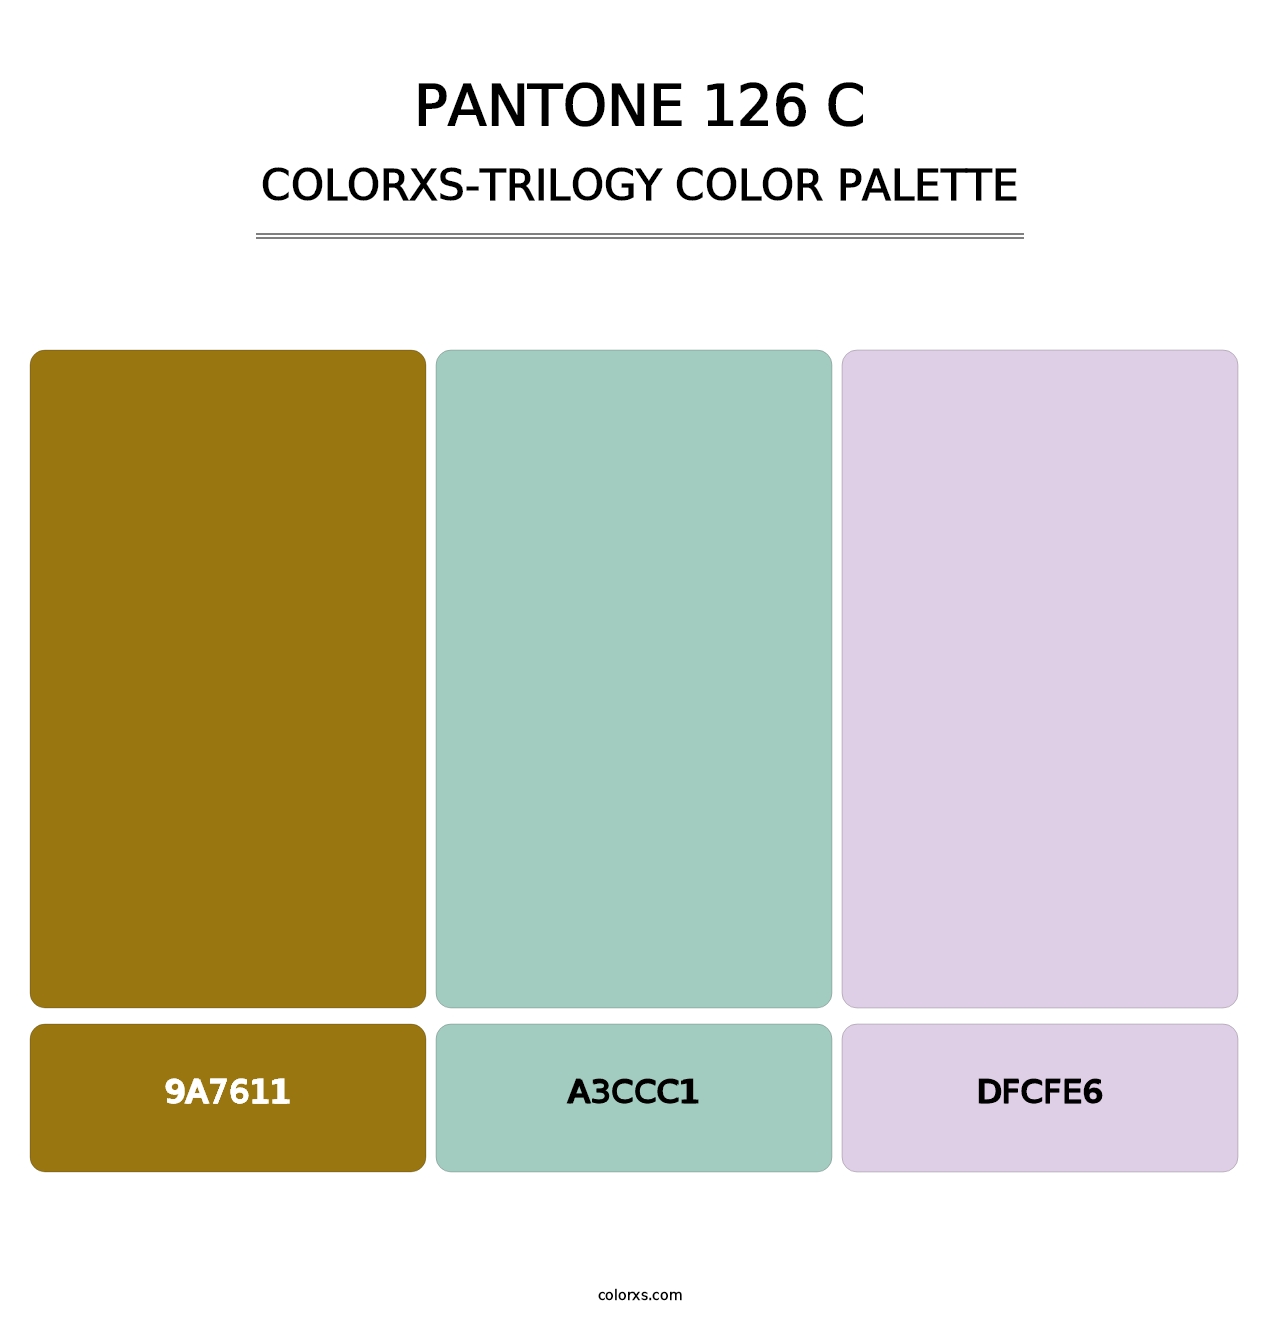 PANTONE 126 C - Colorxs Trilogy Palette